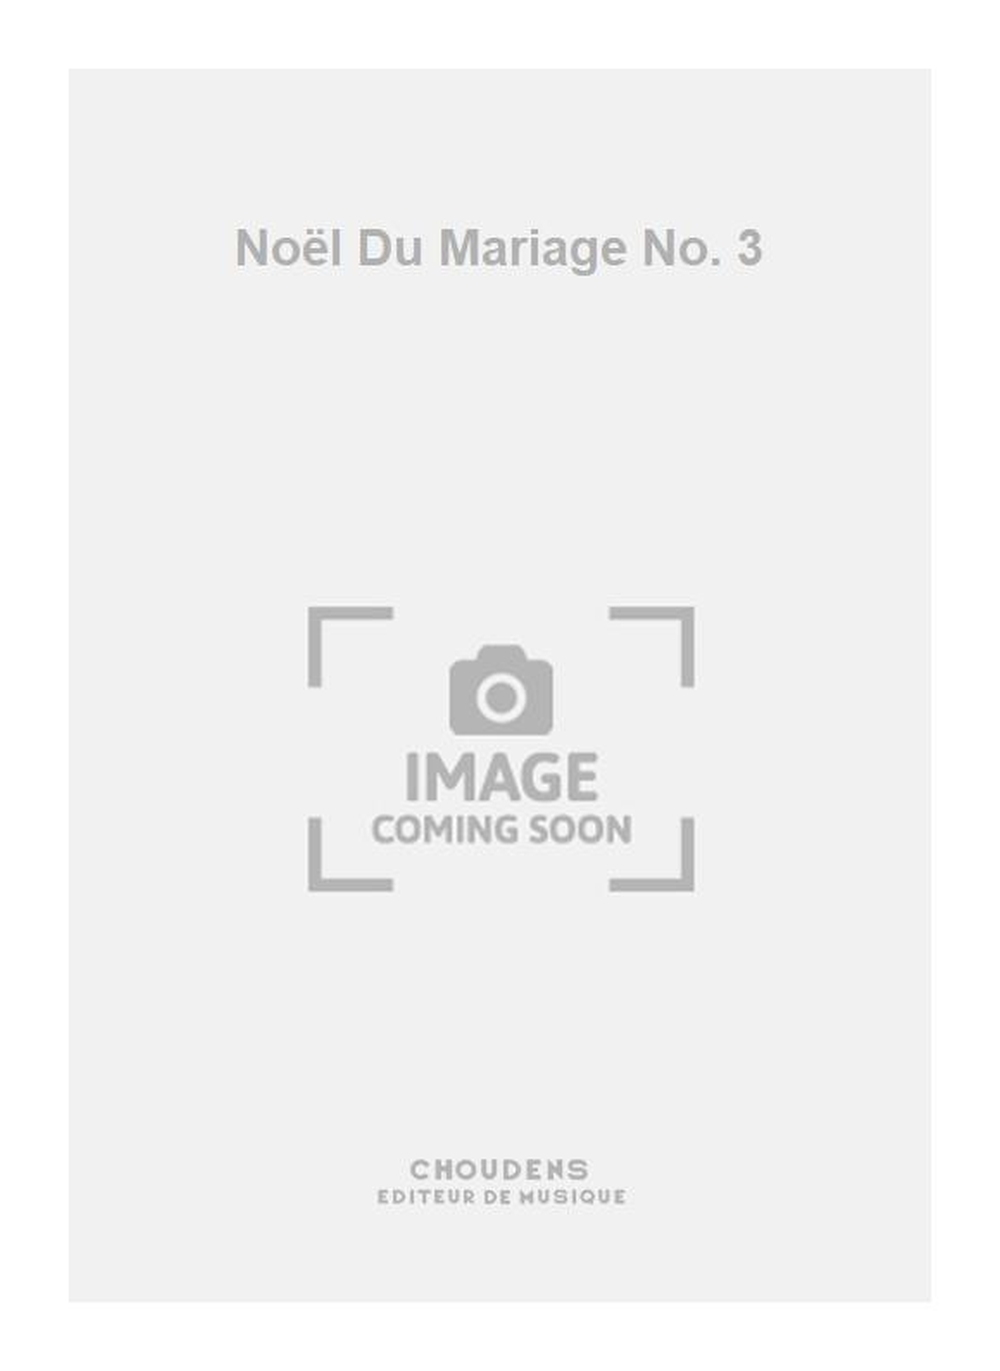 Nol Du Mariage No. 3